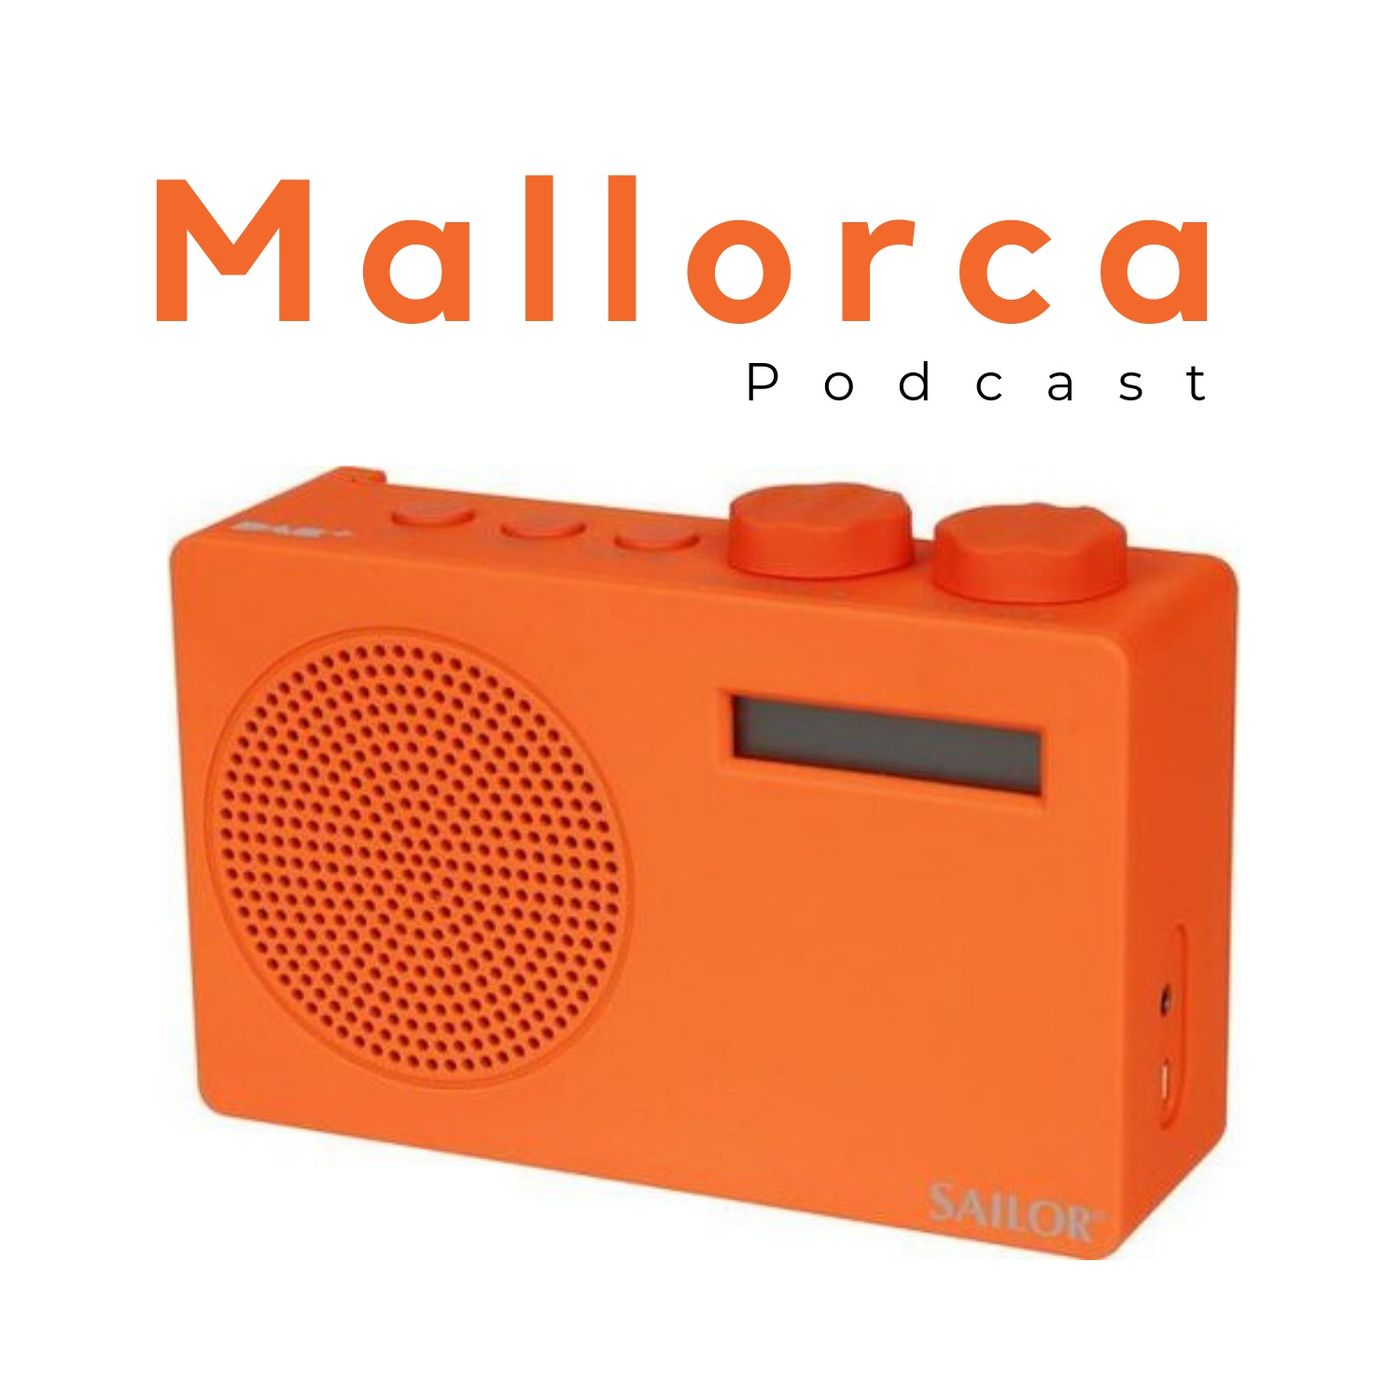 Mallorca Podcast | Noticias Opinión